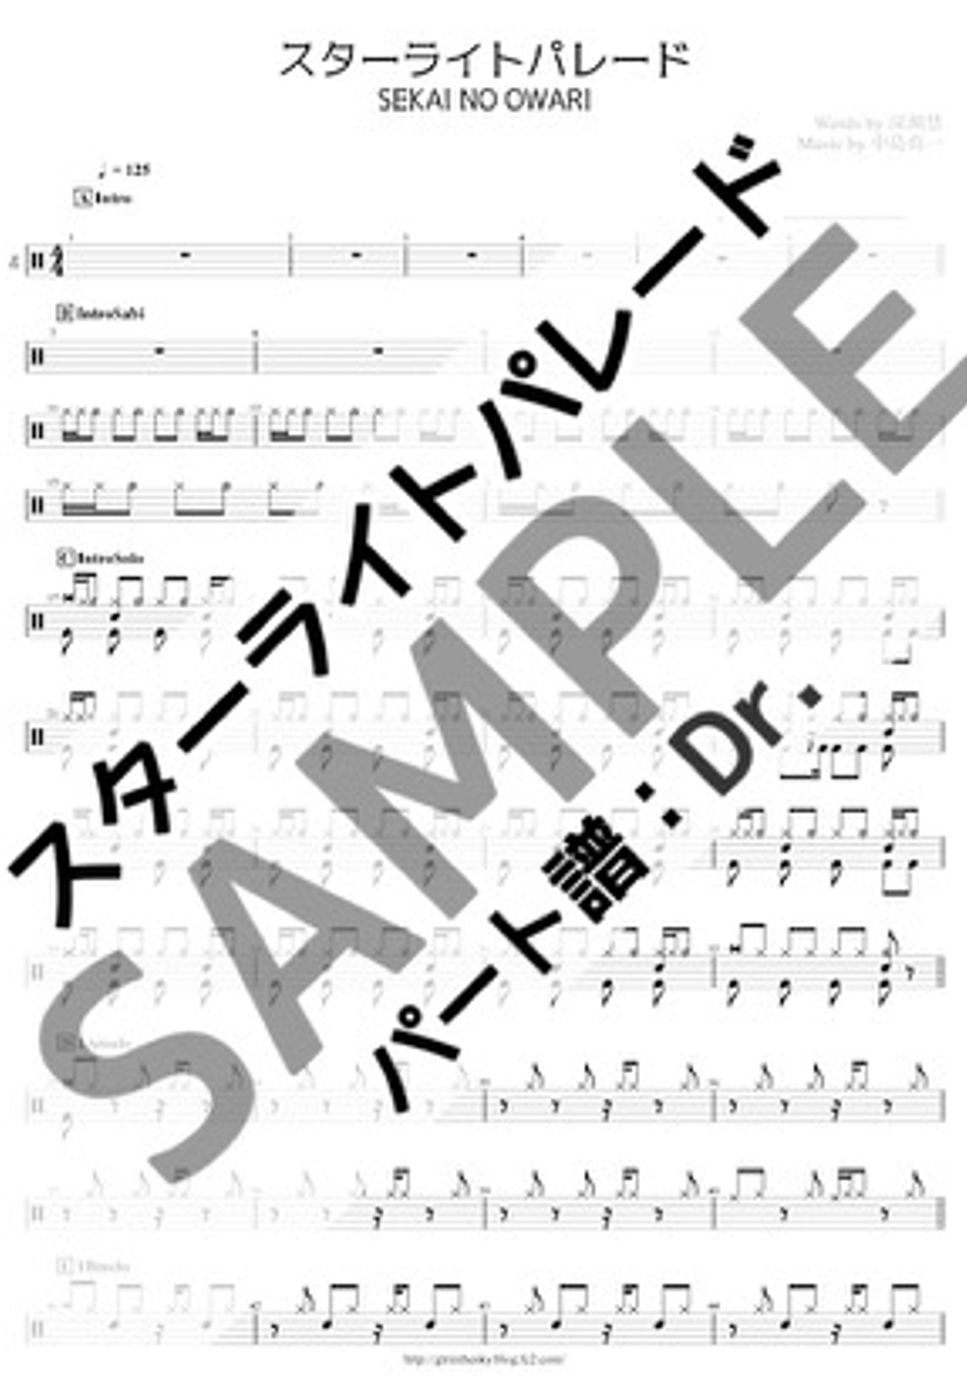 SEKAI NO OWARI - スターライトパレード (Dr./ドラム譜) by Score by Reng